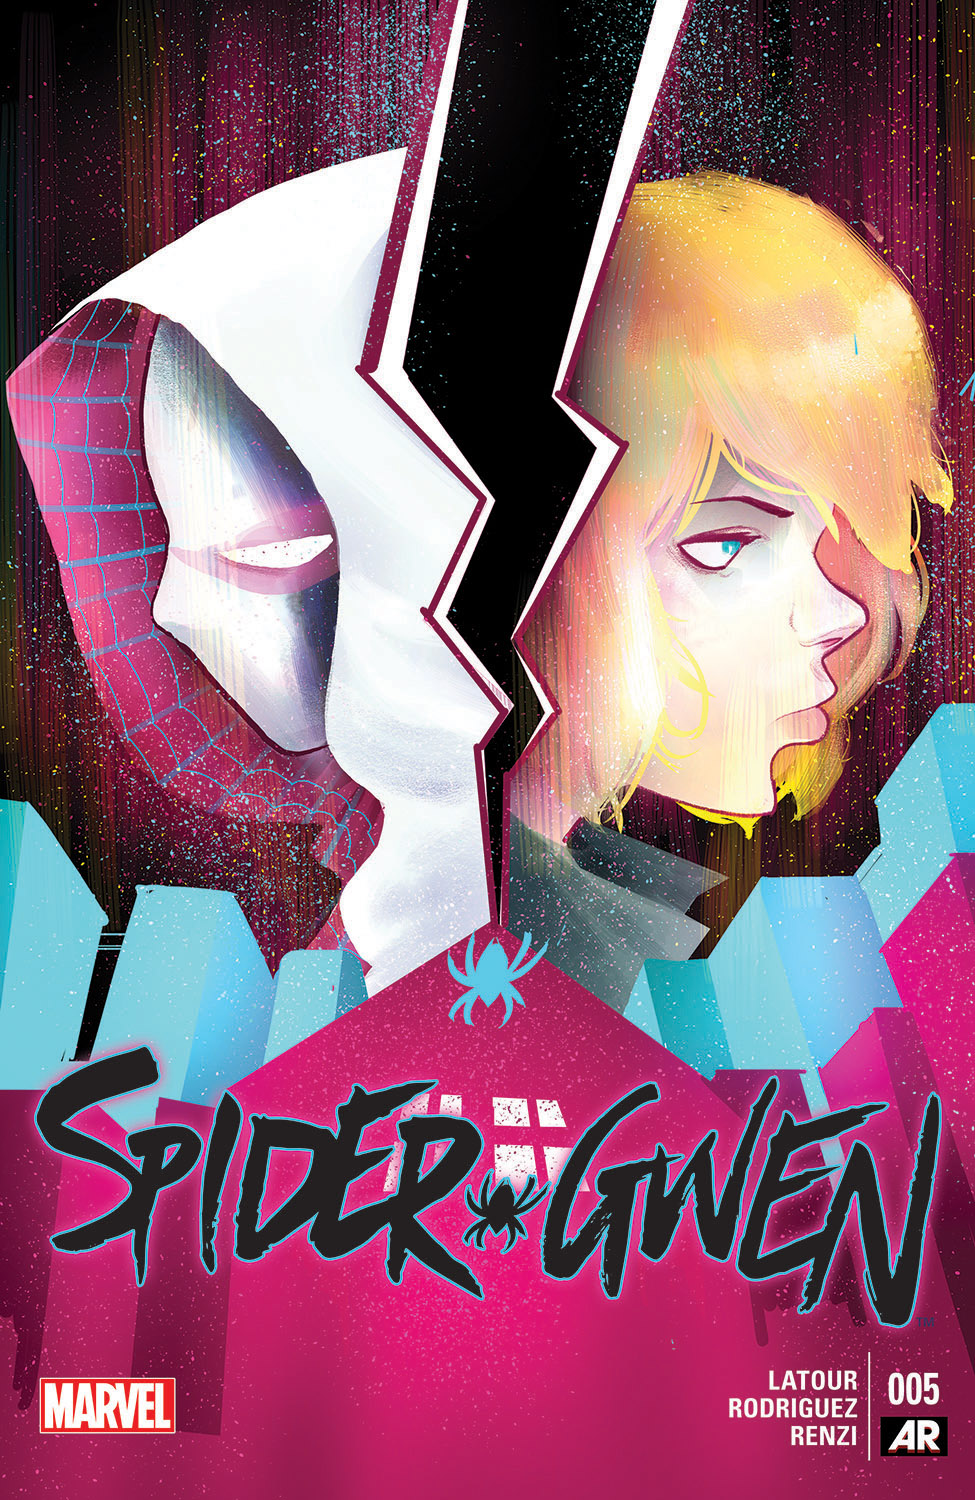 Spider-Gwen (2015) #5